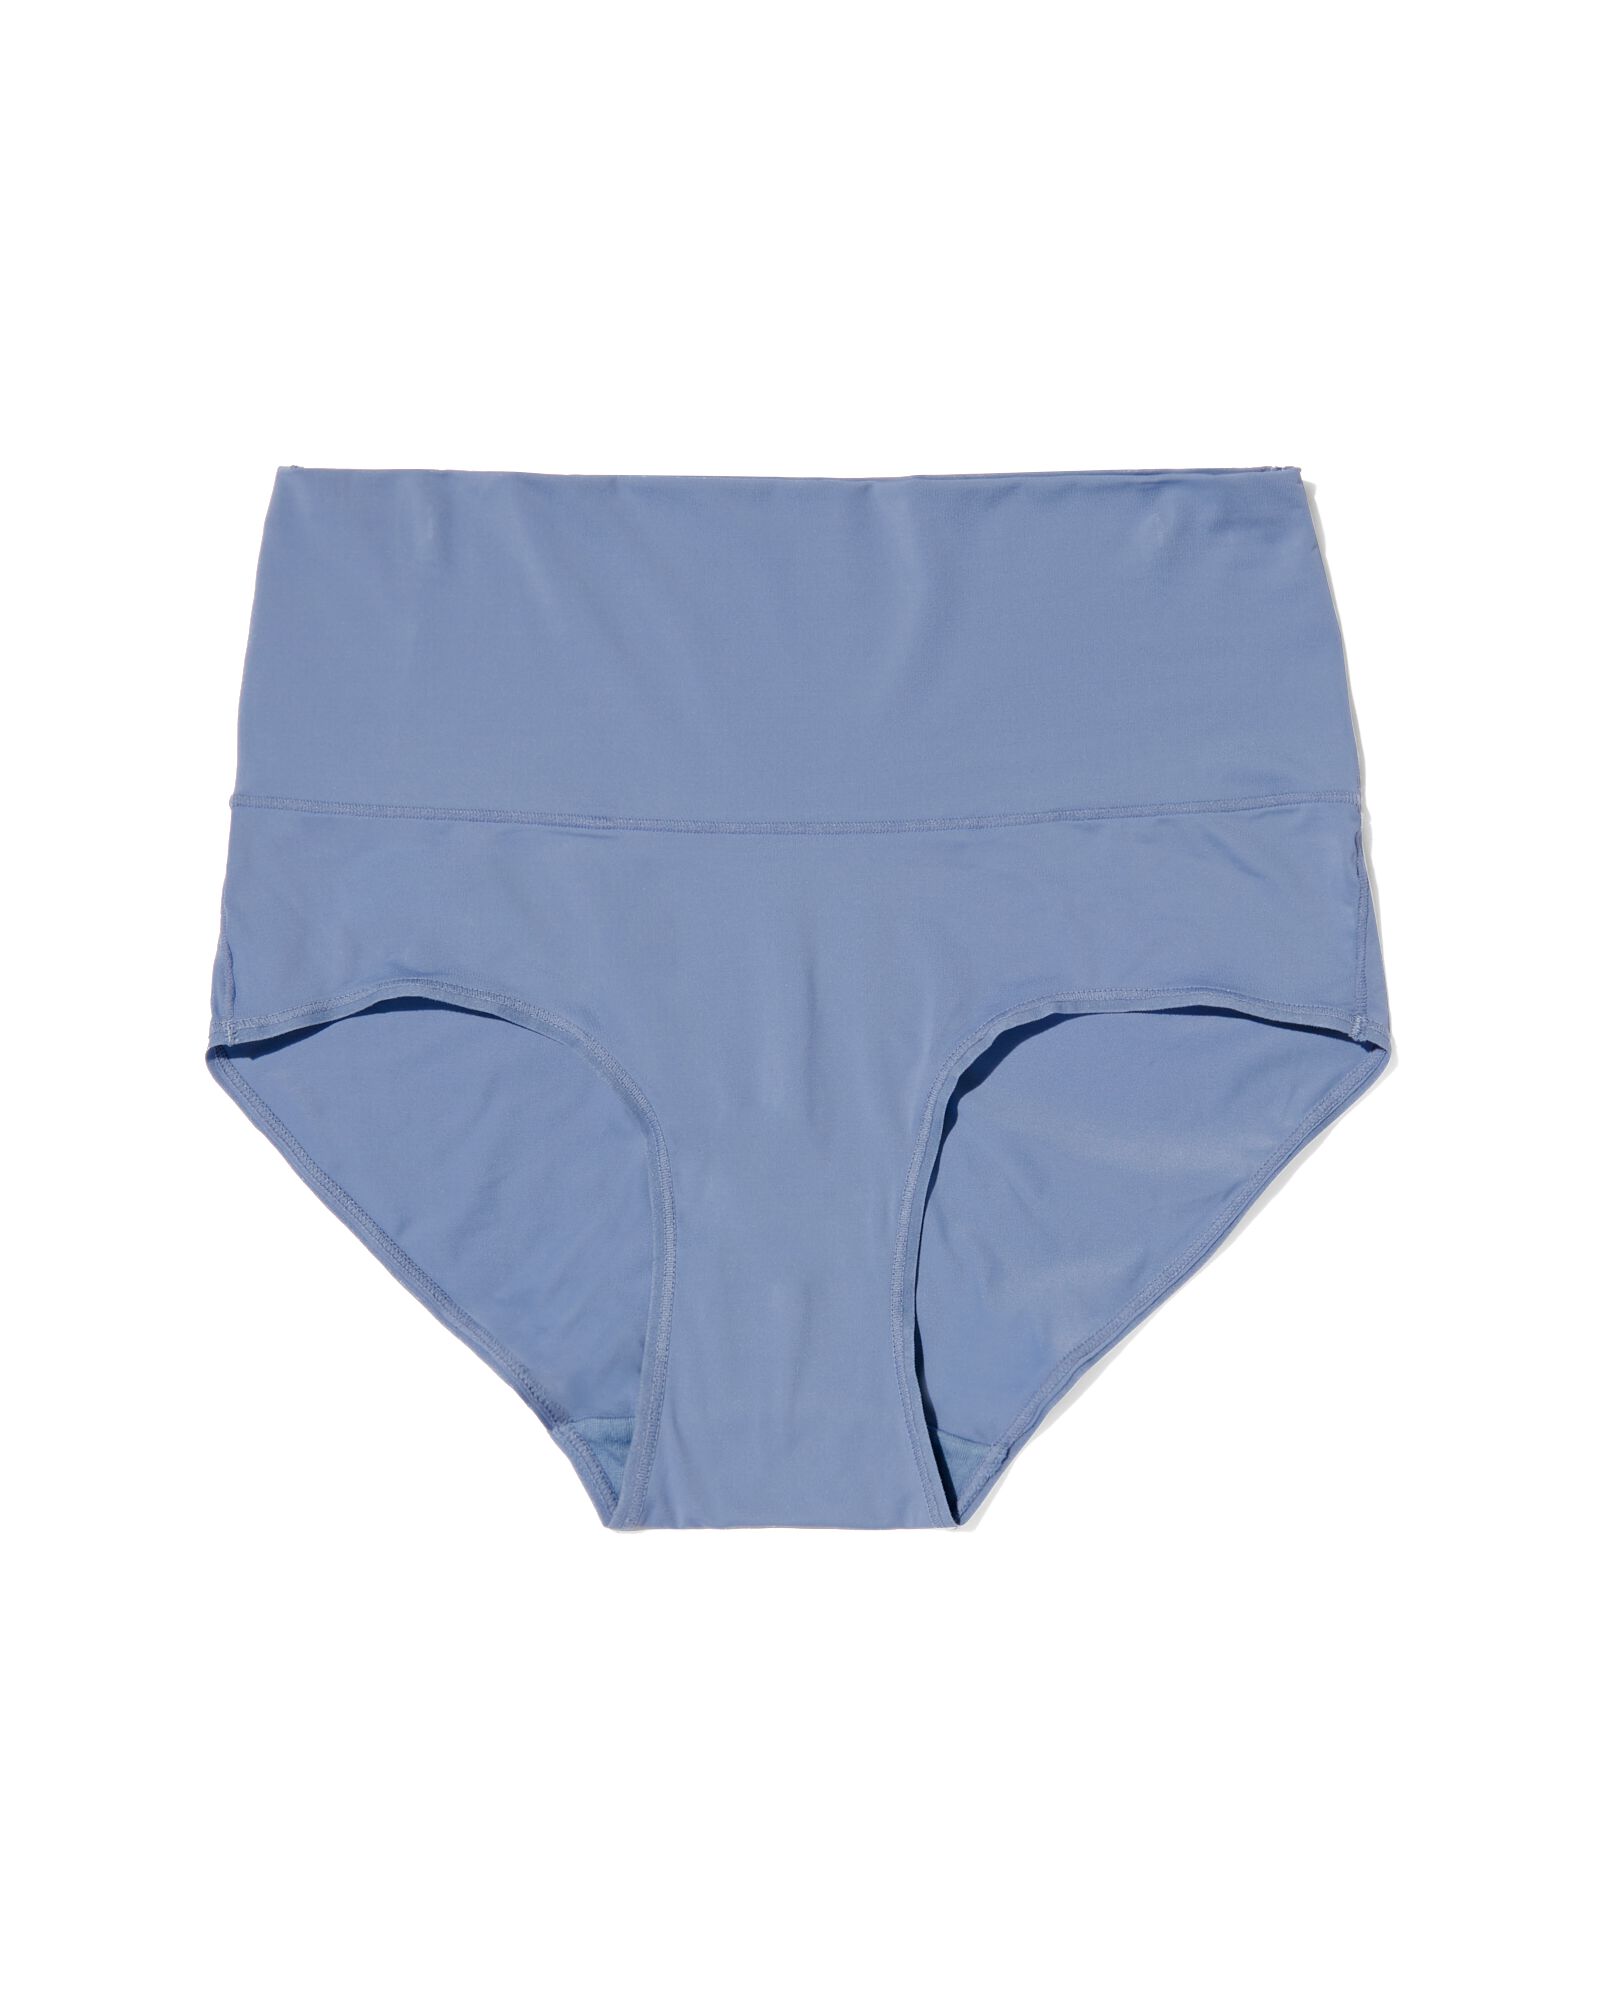 dames slip met hoge taille ultimate comfort blauw blauw - 19610544BLUE - HEMA